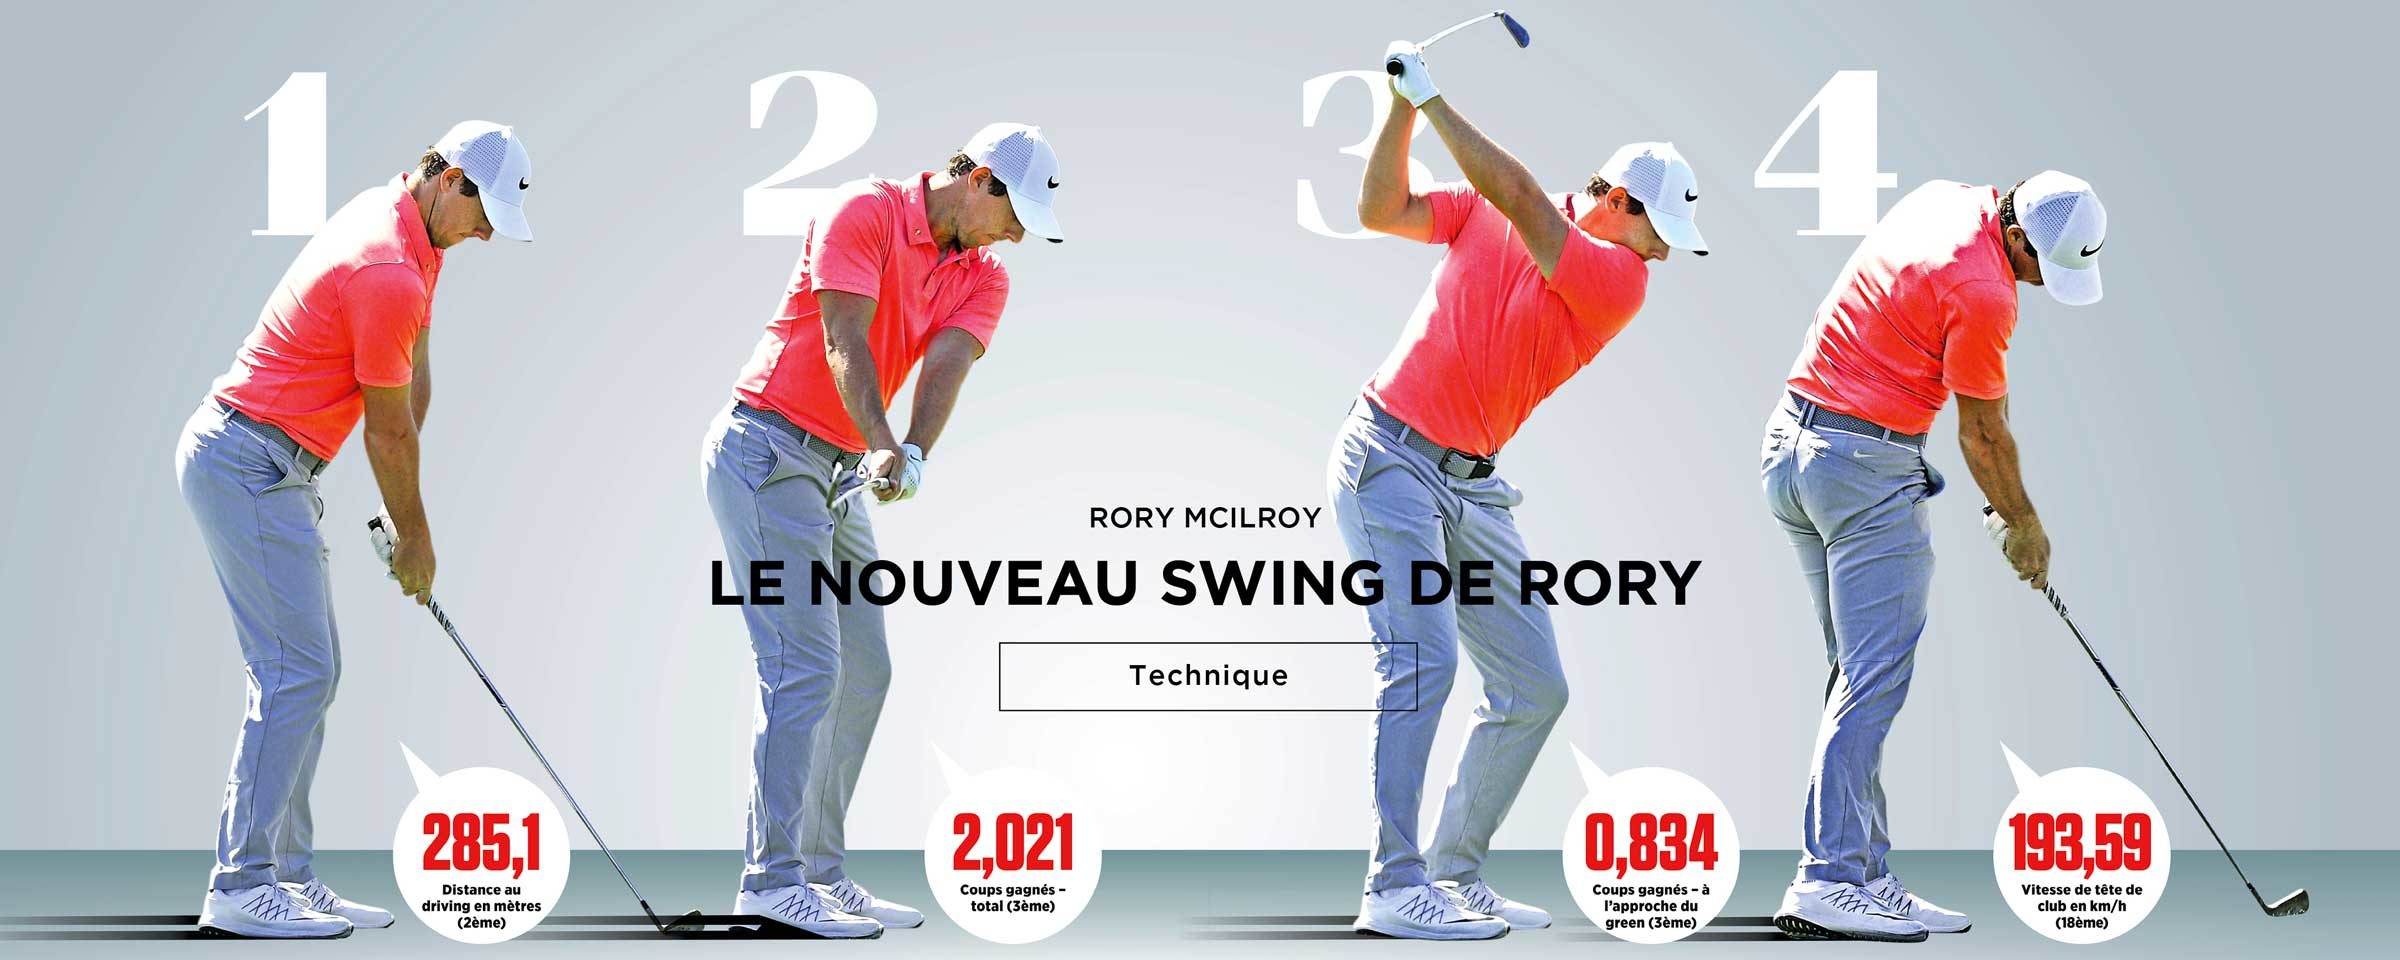 Le nouveau swing de Rory